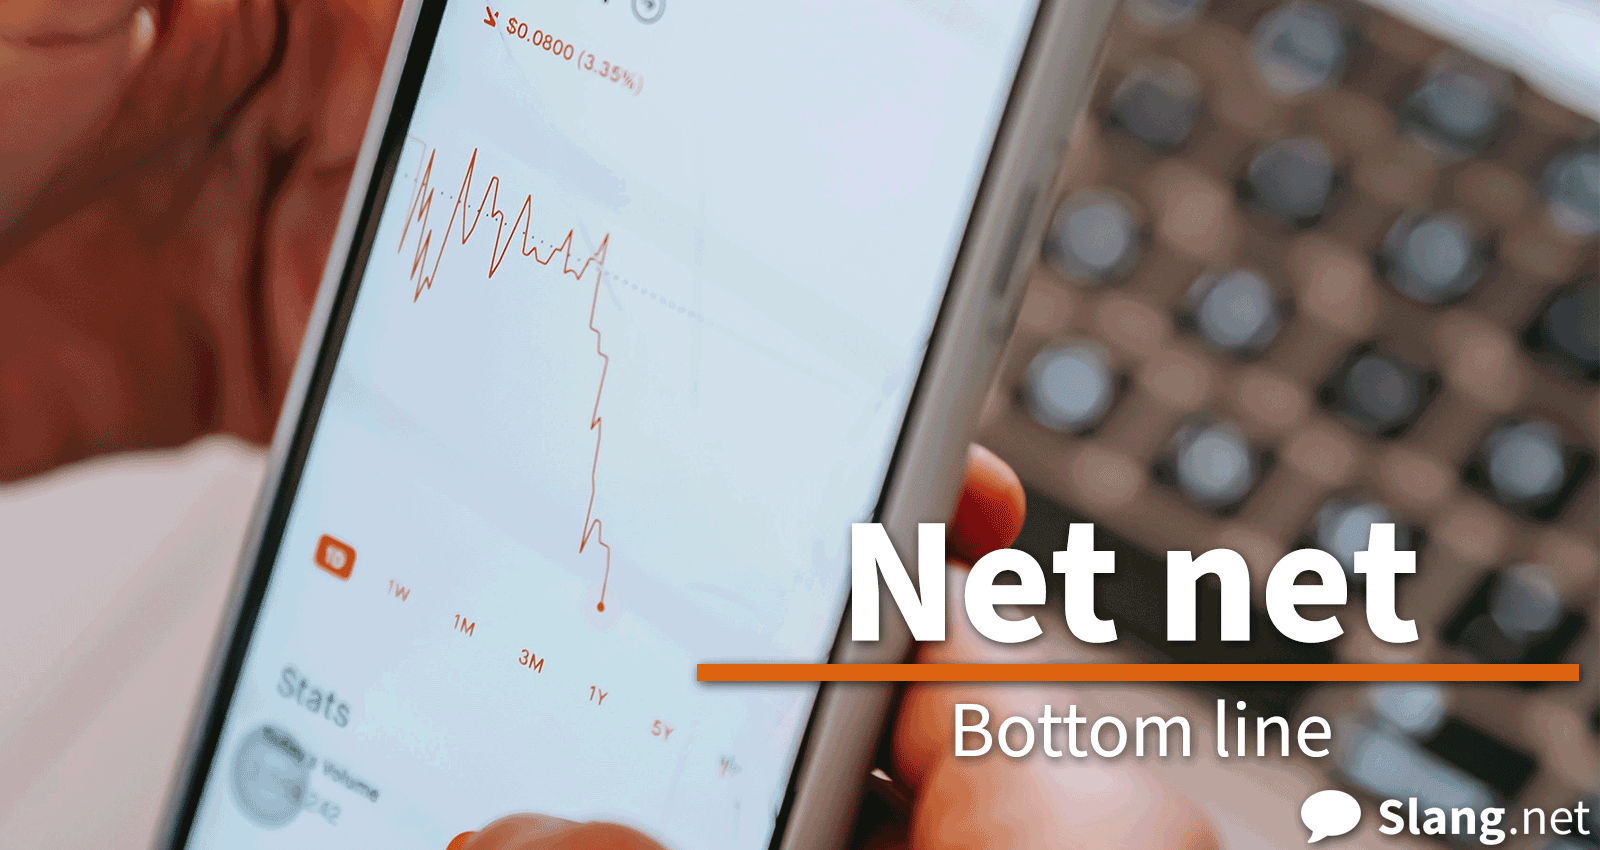 Net net means &quot;bottom line&quot;